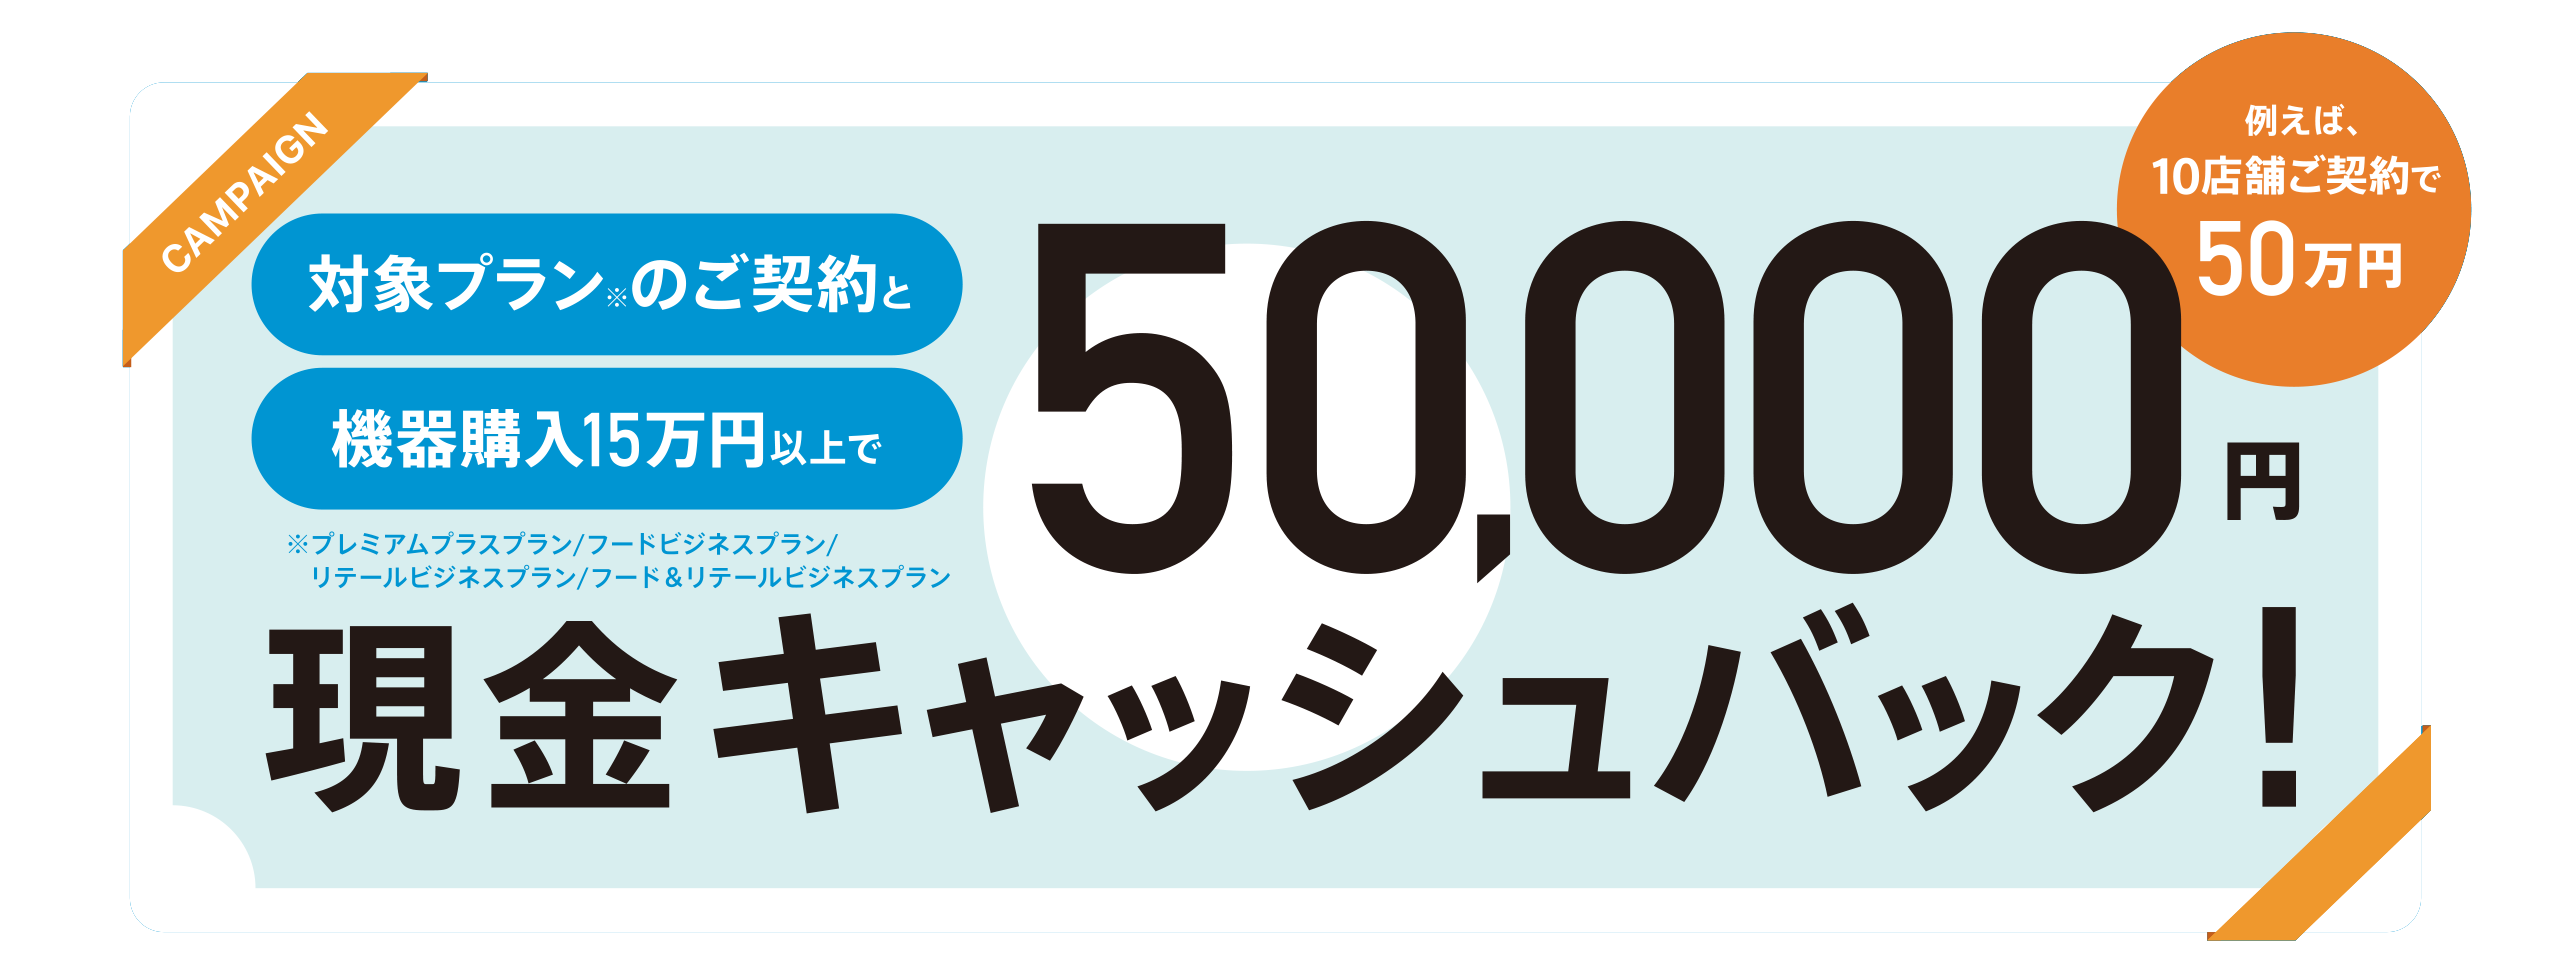 【50,000円キャッシュバック】スマレジ導入支援キャンペーン